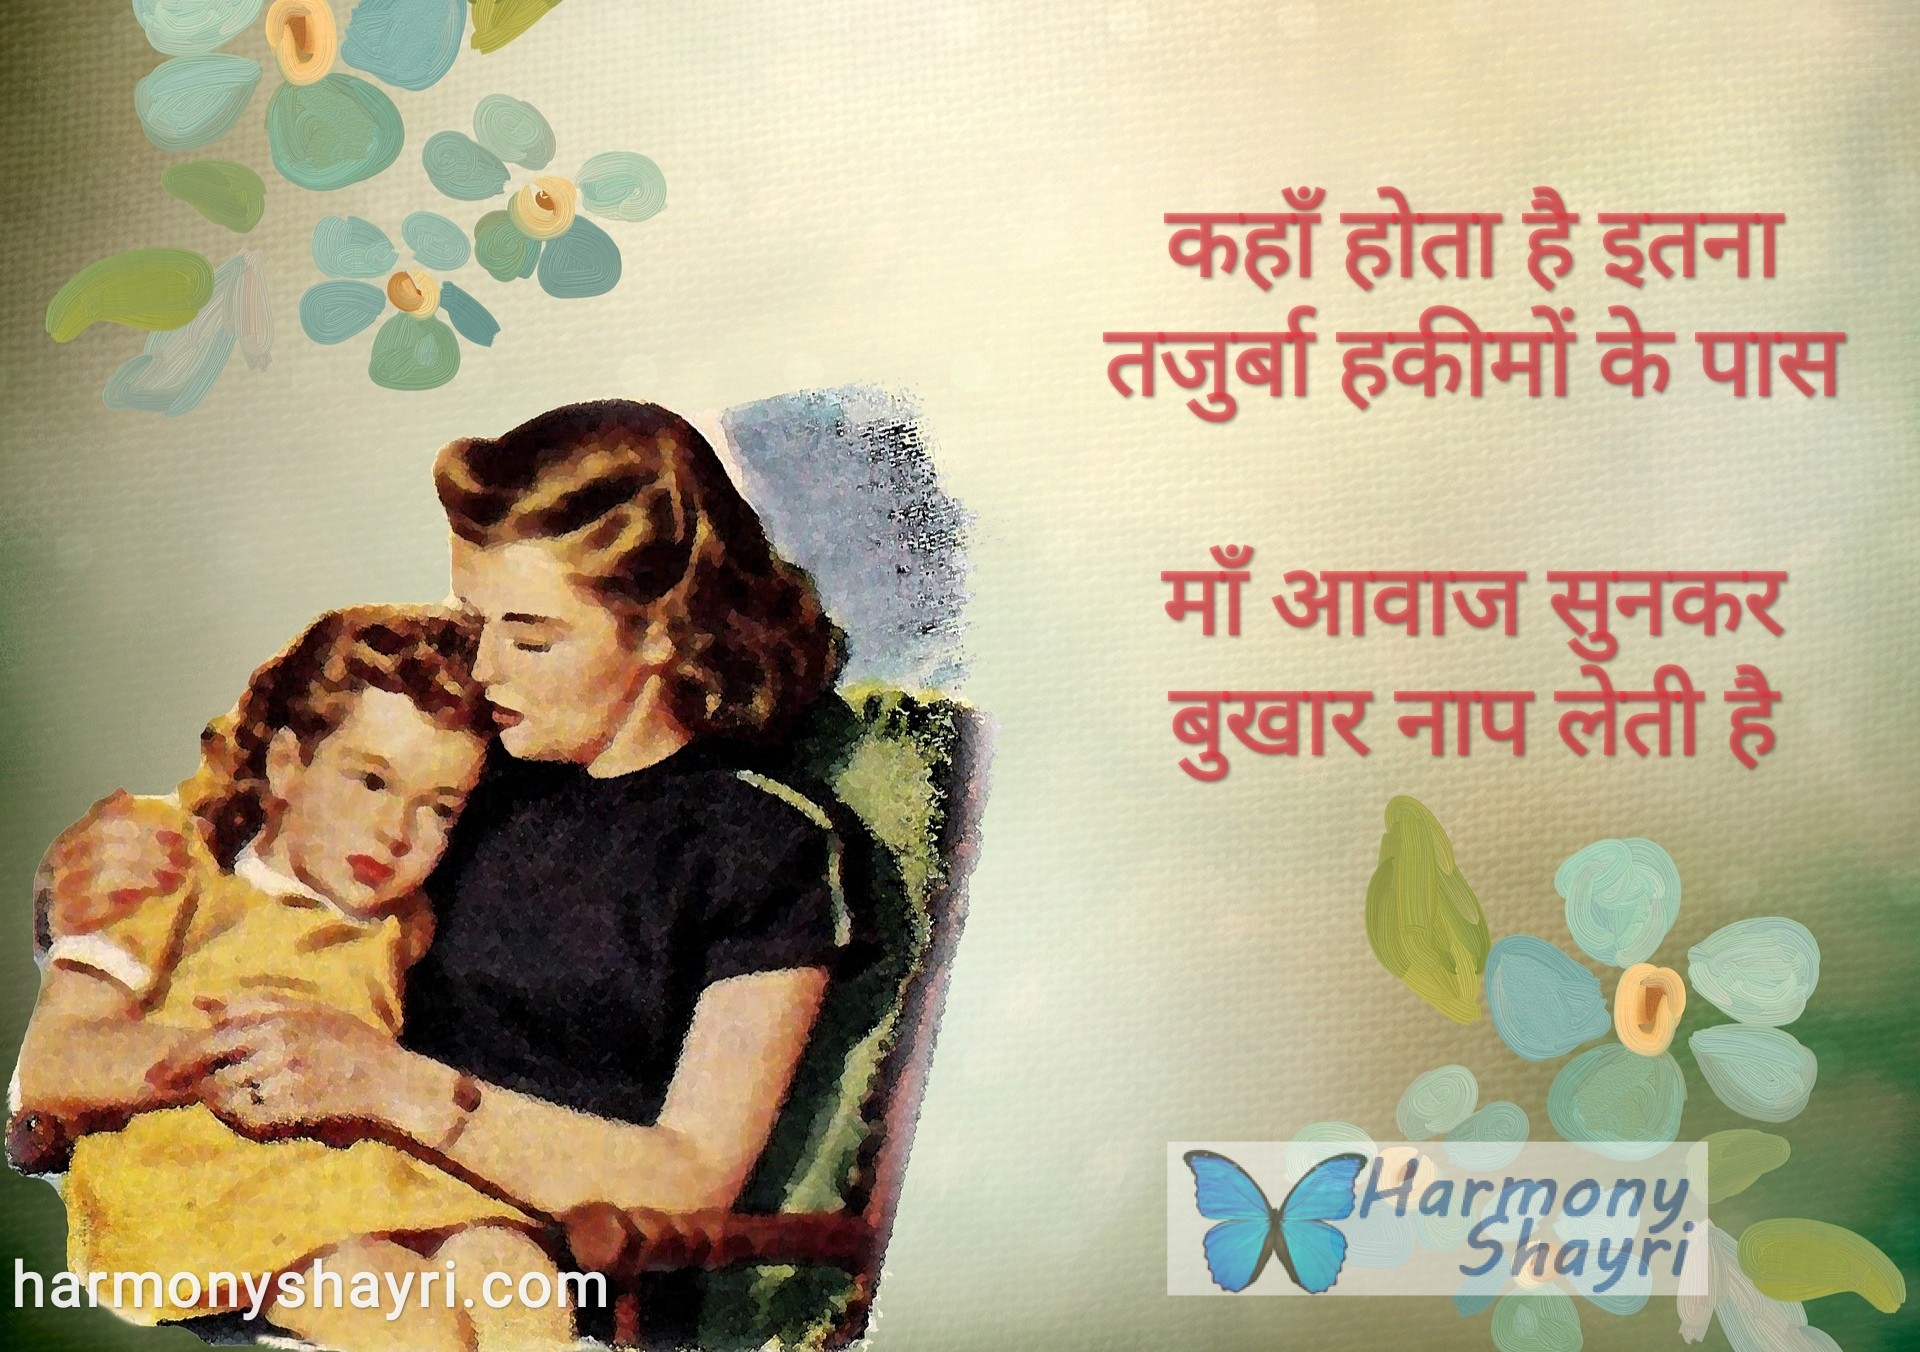 Kanha hota hai itna tajurba – Happy Mother’s Day